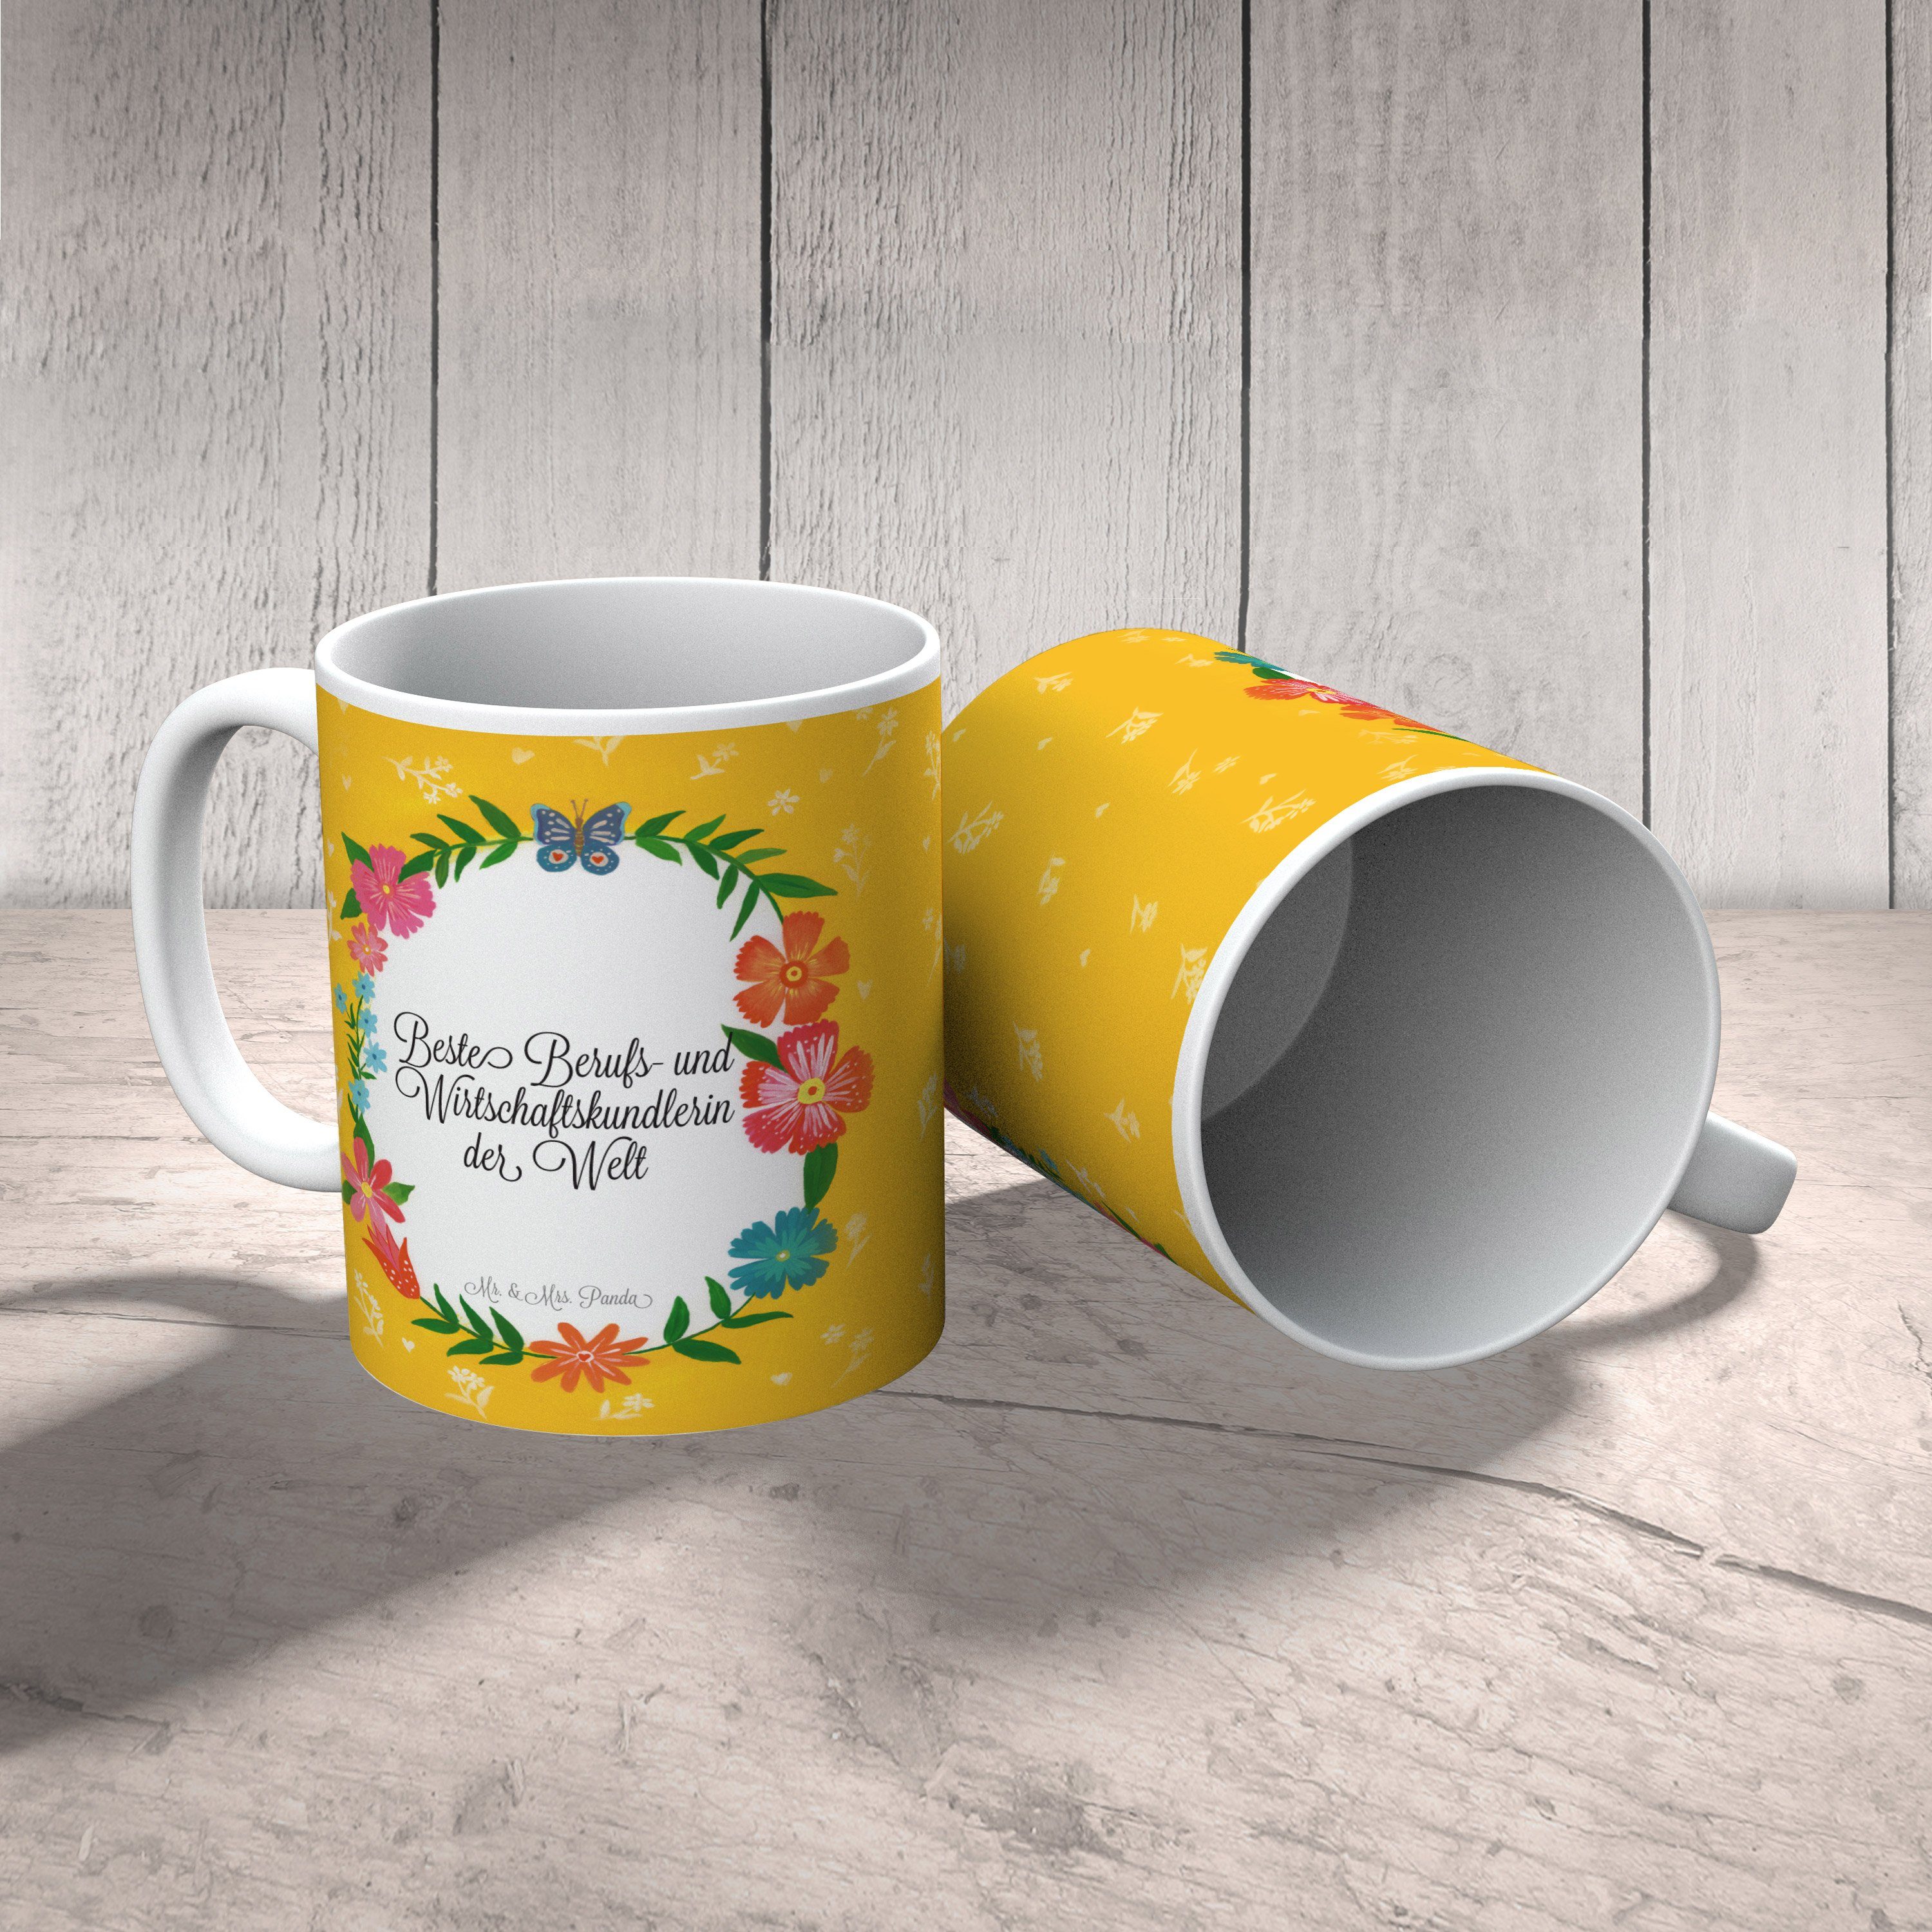 Mr. & Mrs. Panda Wirtschaftskundlerin Keramik Tasse - Geschenk, Schenken, und Kaffeebecher, Berufs